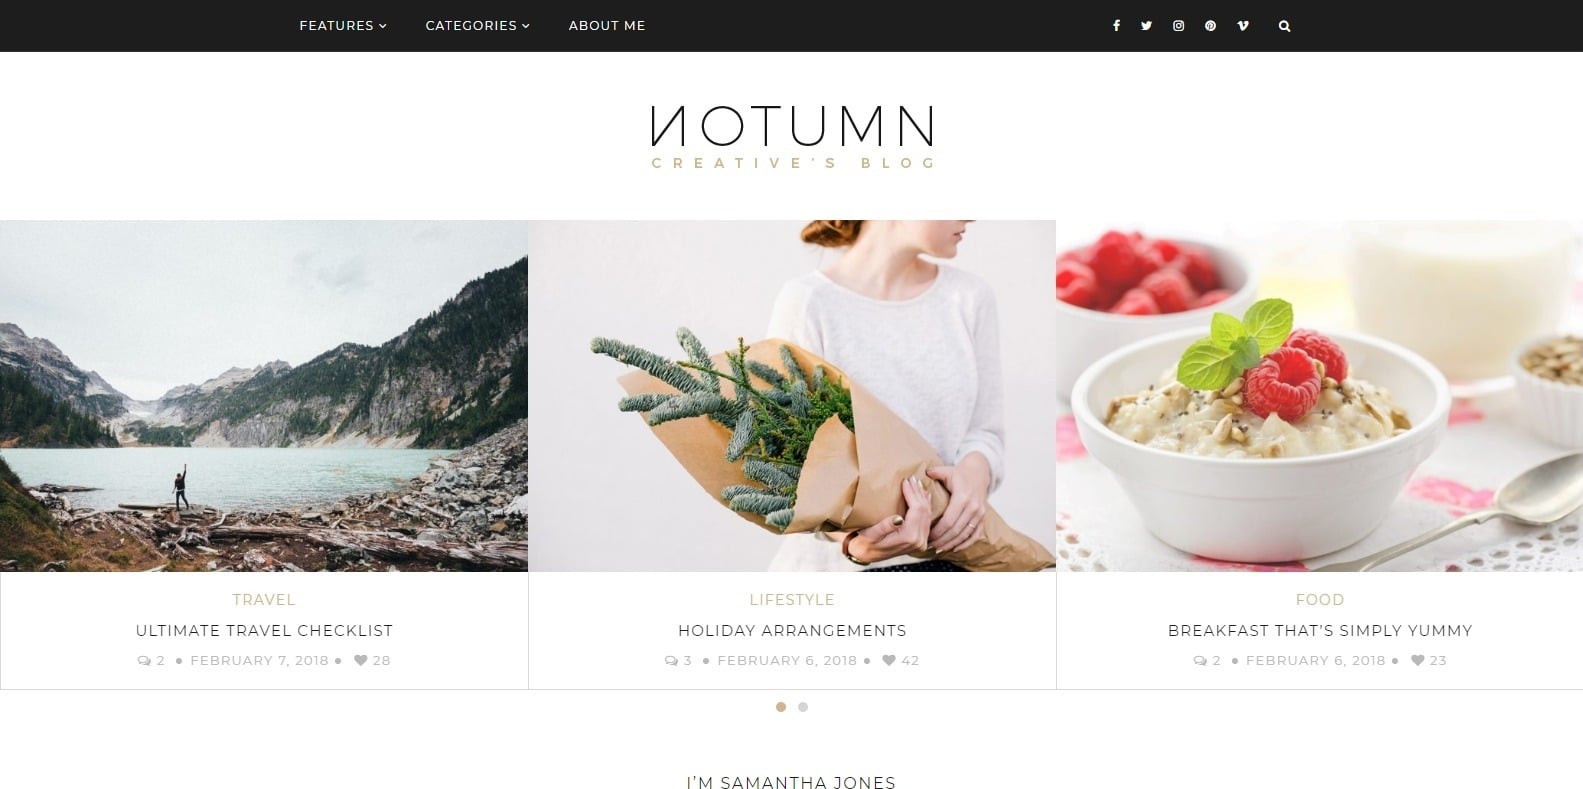 notumn-food-blog-website-template